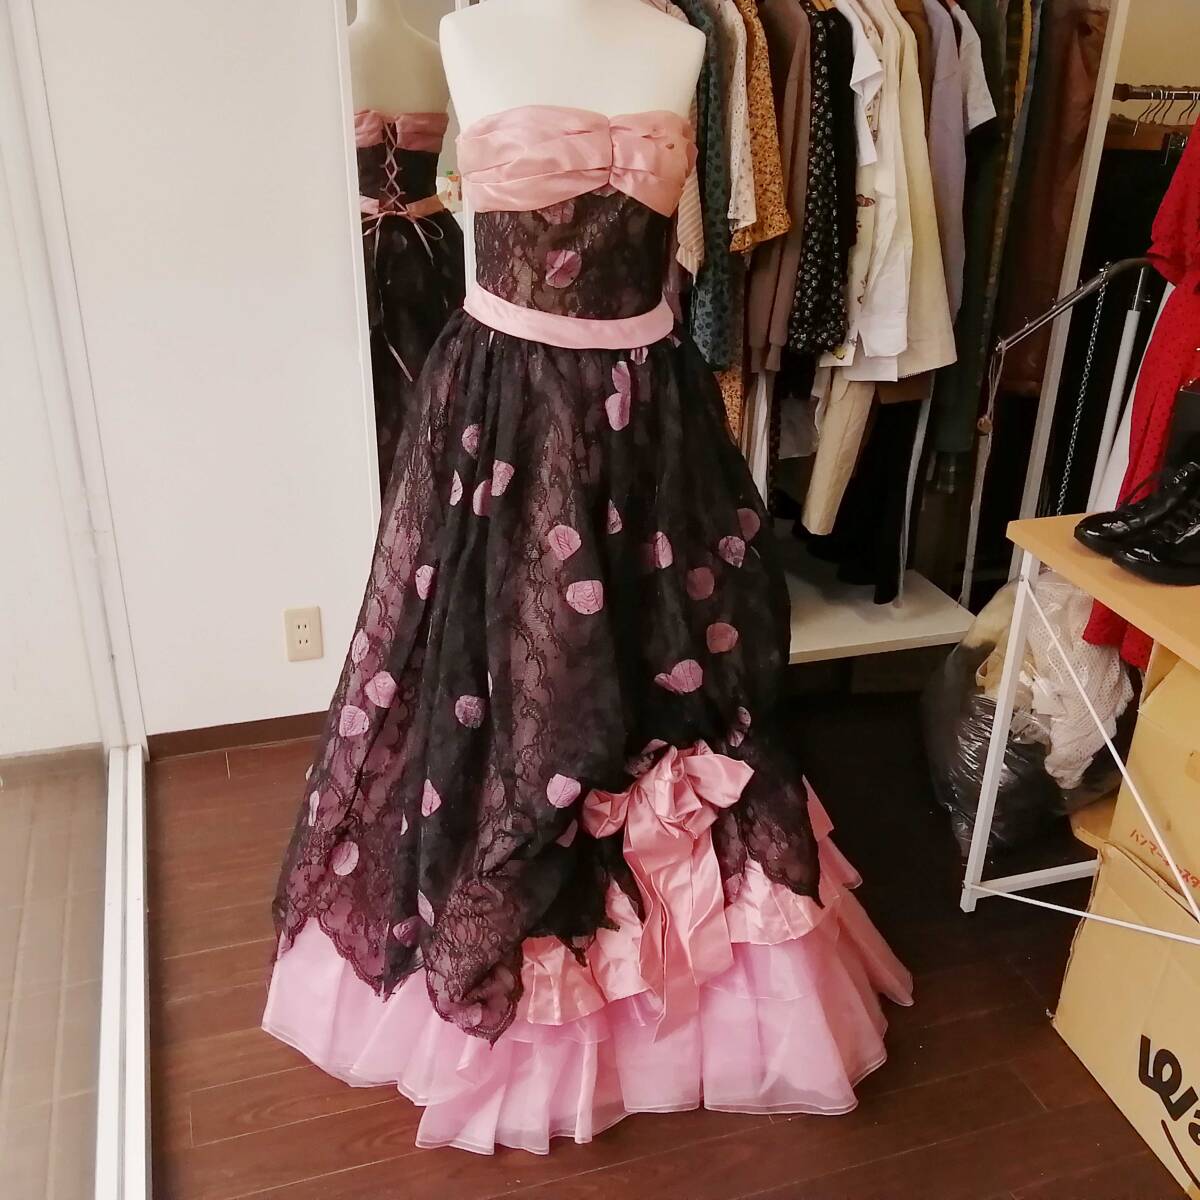 ROCHAS カラードレス 7号 ピンク×黒レース♪ロングドレス 汚れあり 発表会 舞台衣装に。240423ari2_画像1